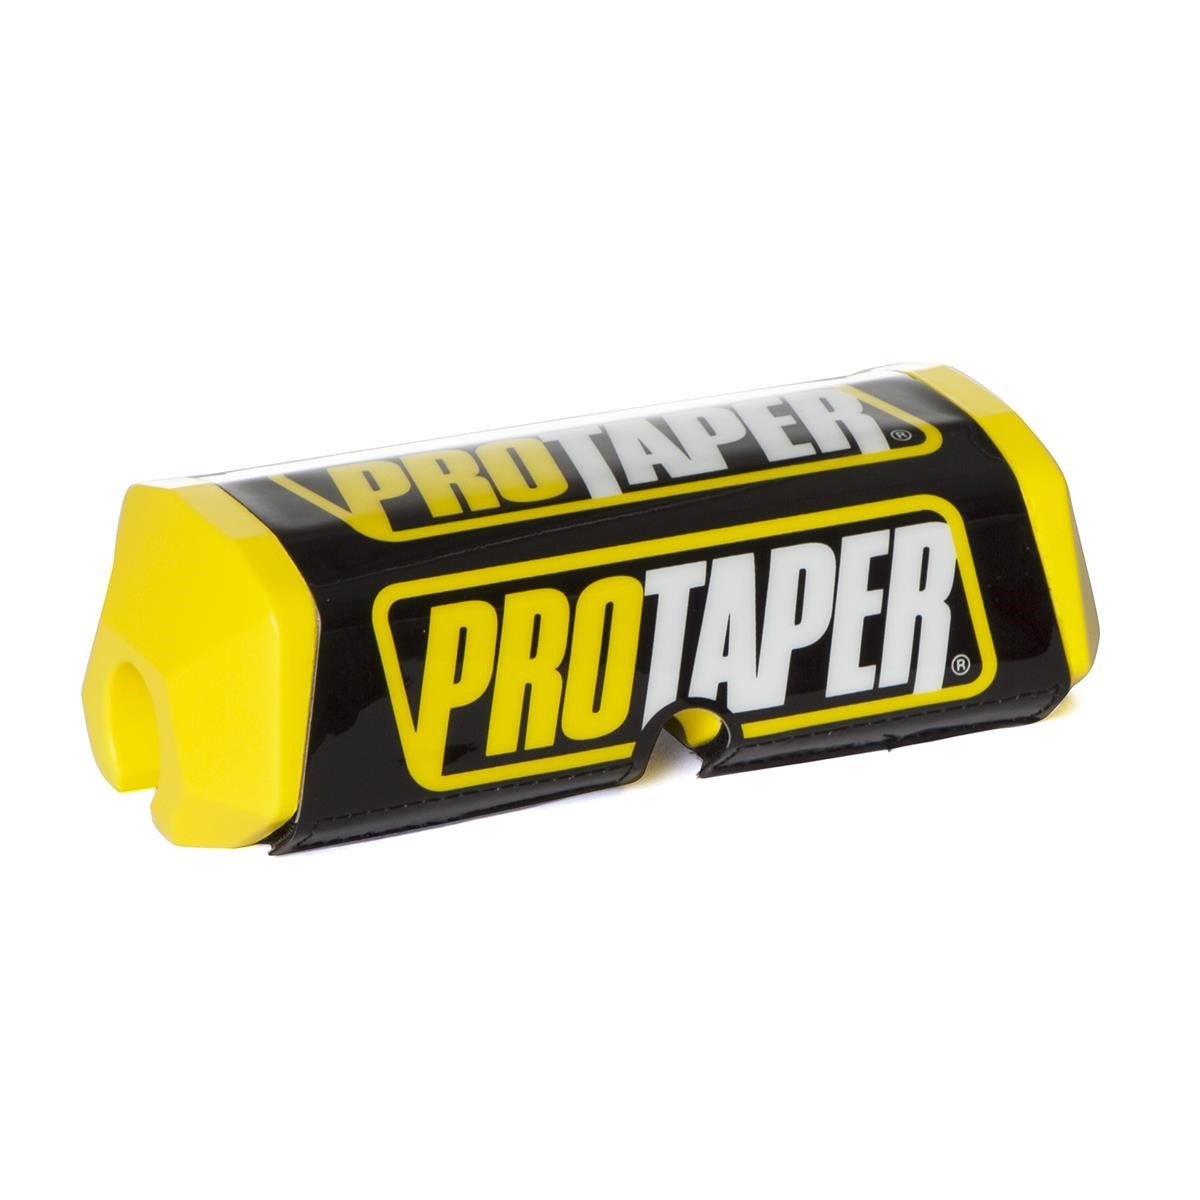 ProTaper Bar Pad Squarepads 2.0 Yellow/Black, 28.6 mm